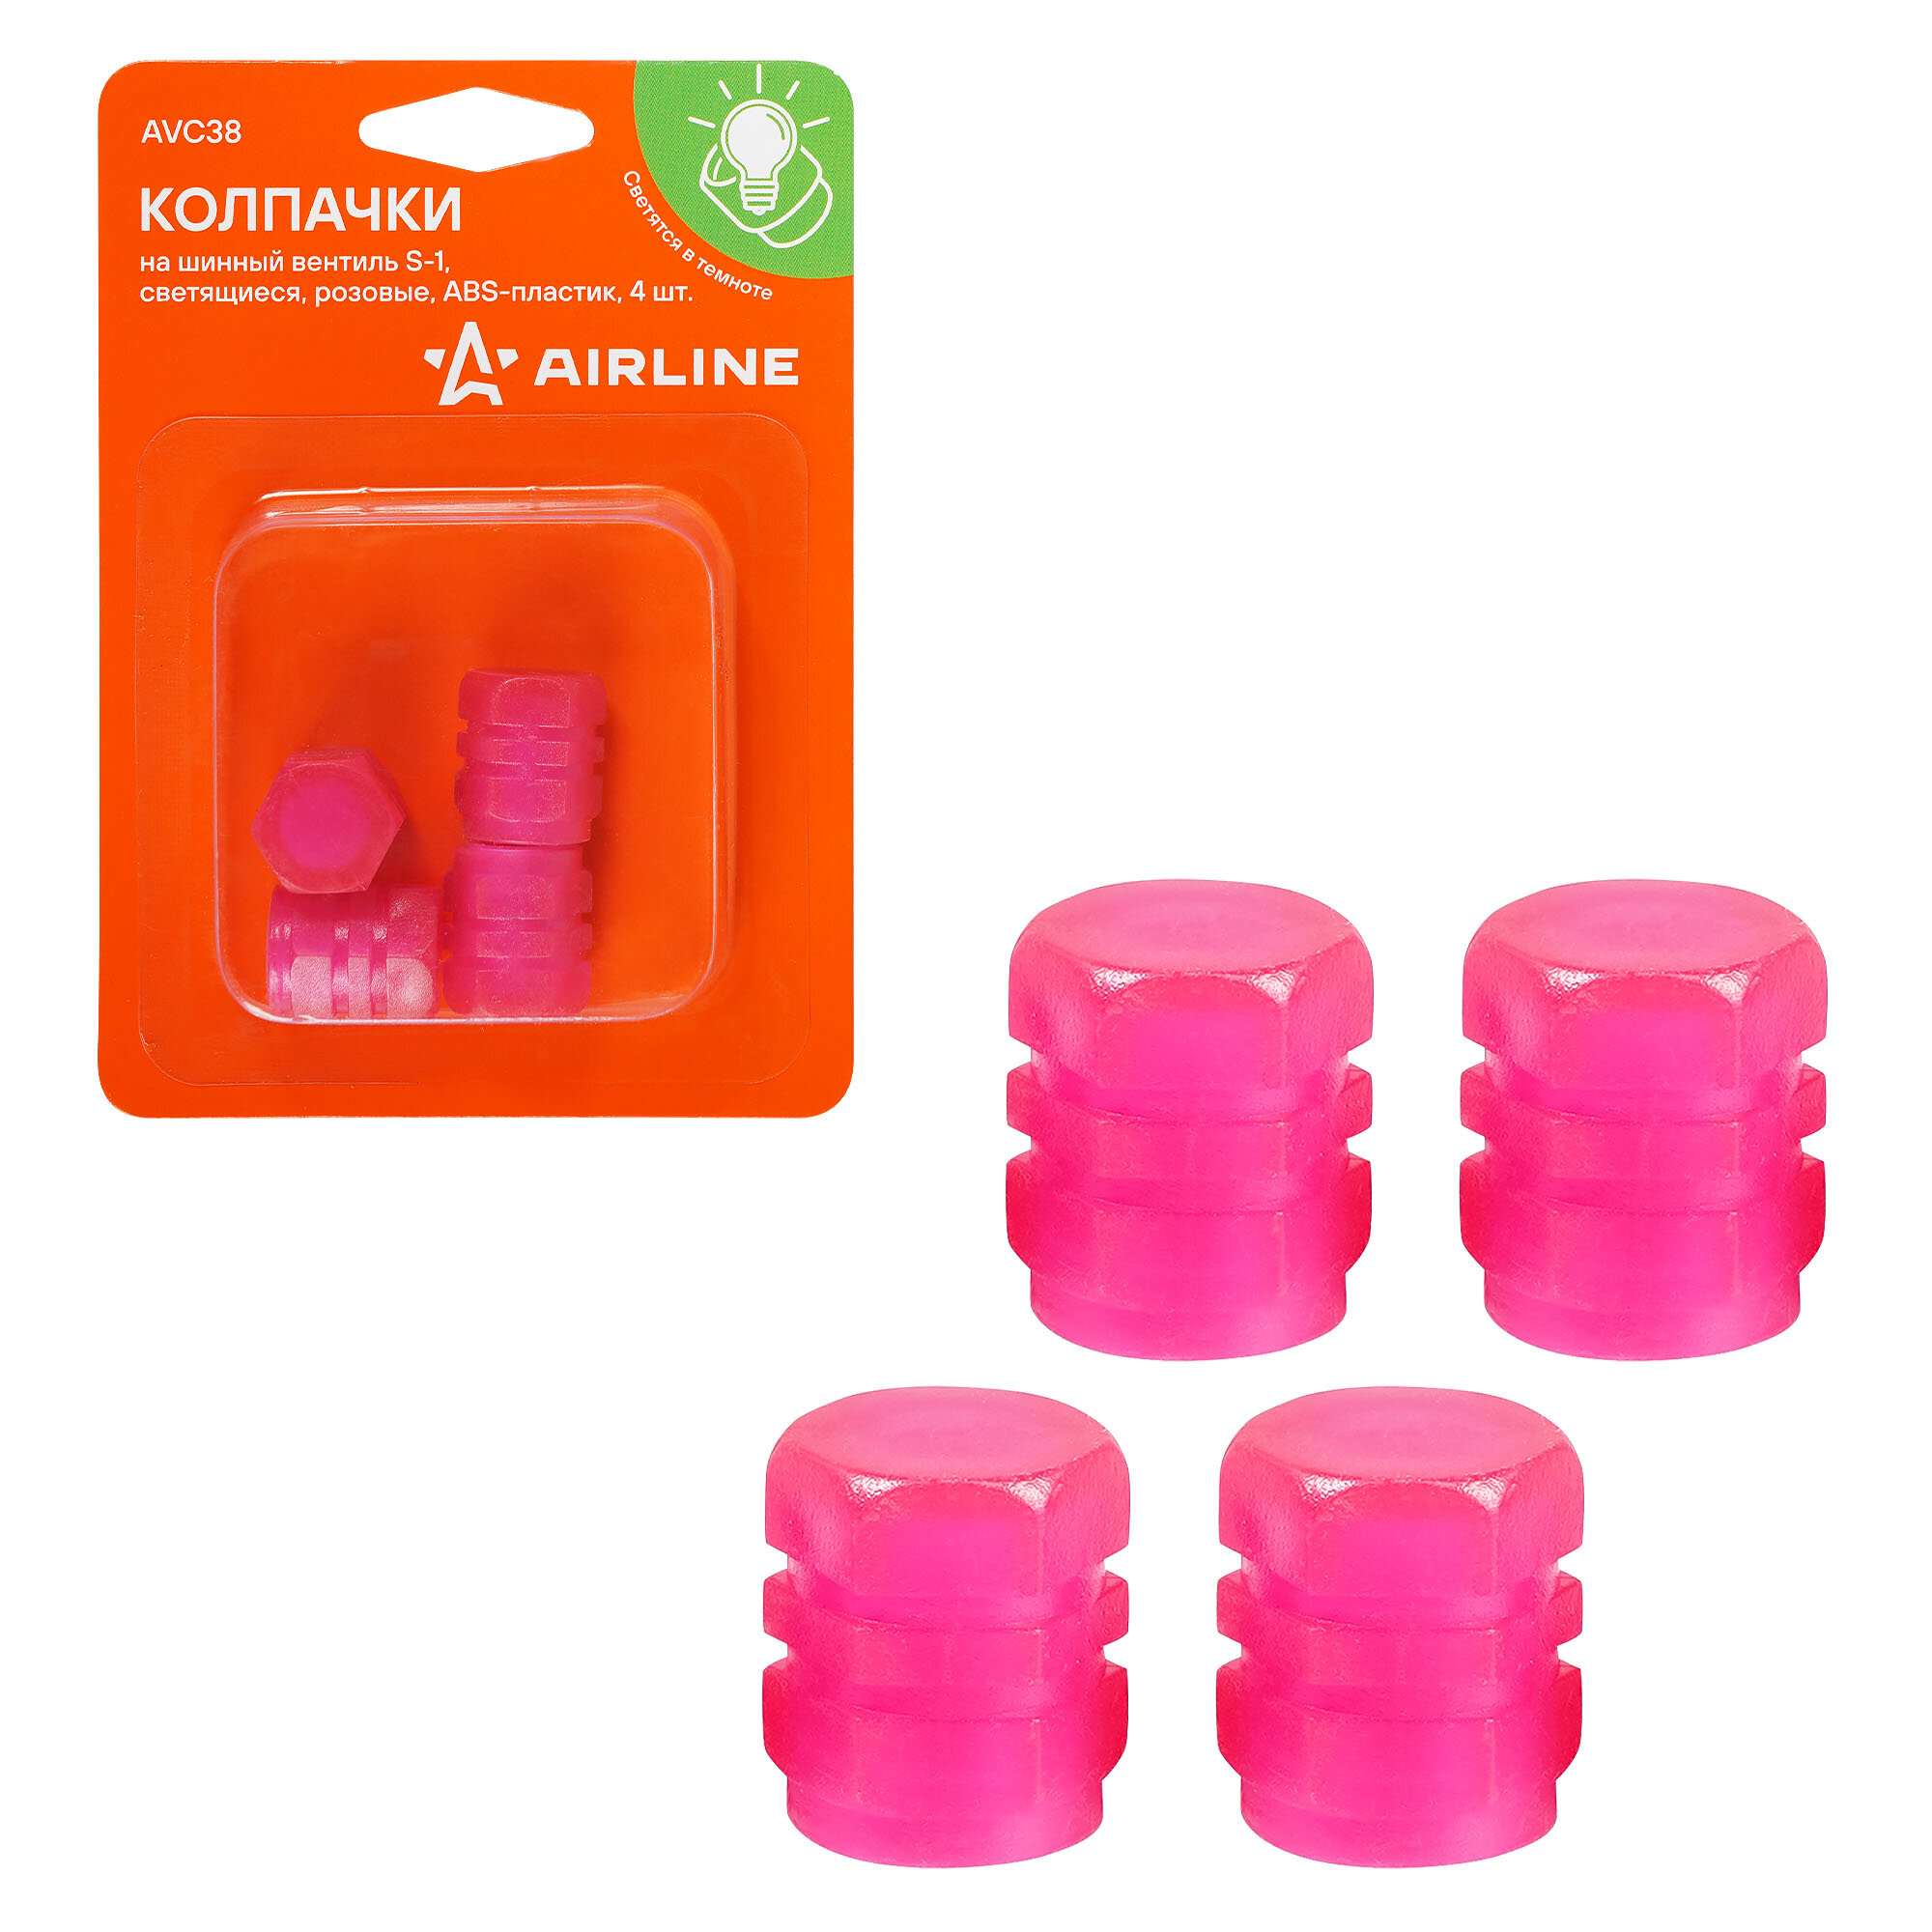 Колпачки на шинный вентиль S-1 светящиеся розовые ABS-пластик 4 шт. AVC38 AIRLINE